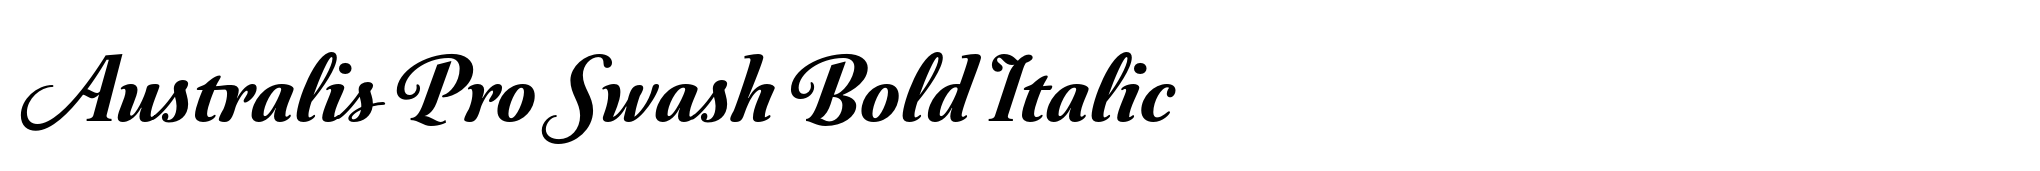 Australis Pro Swash Bold Italic image